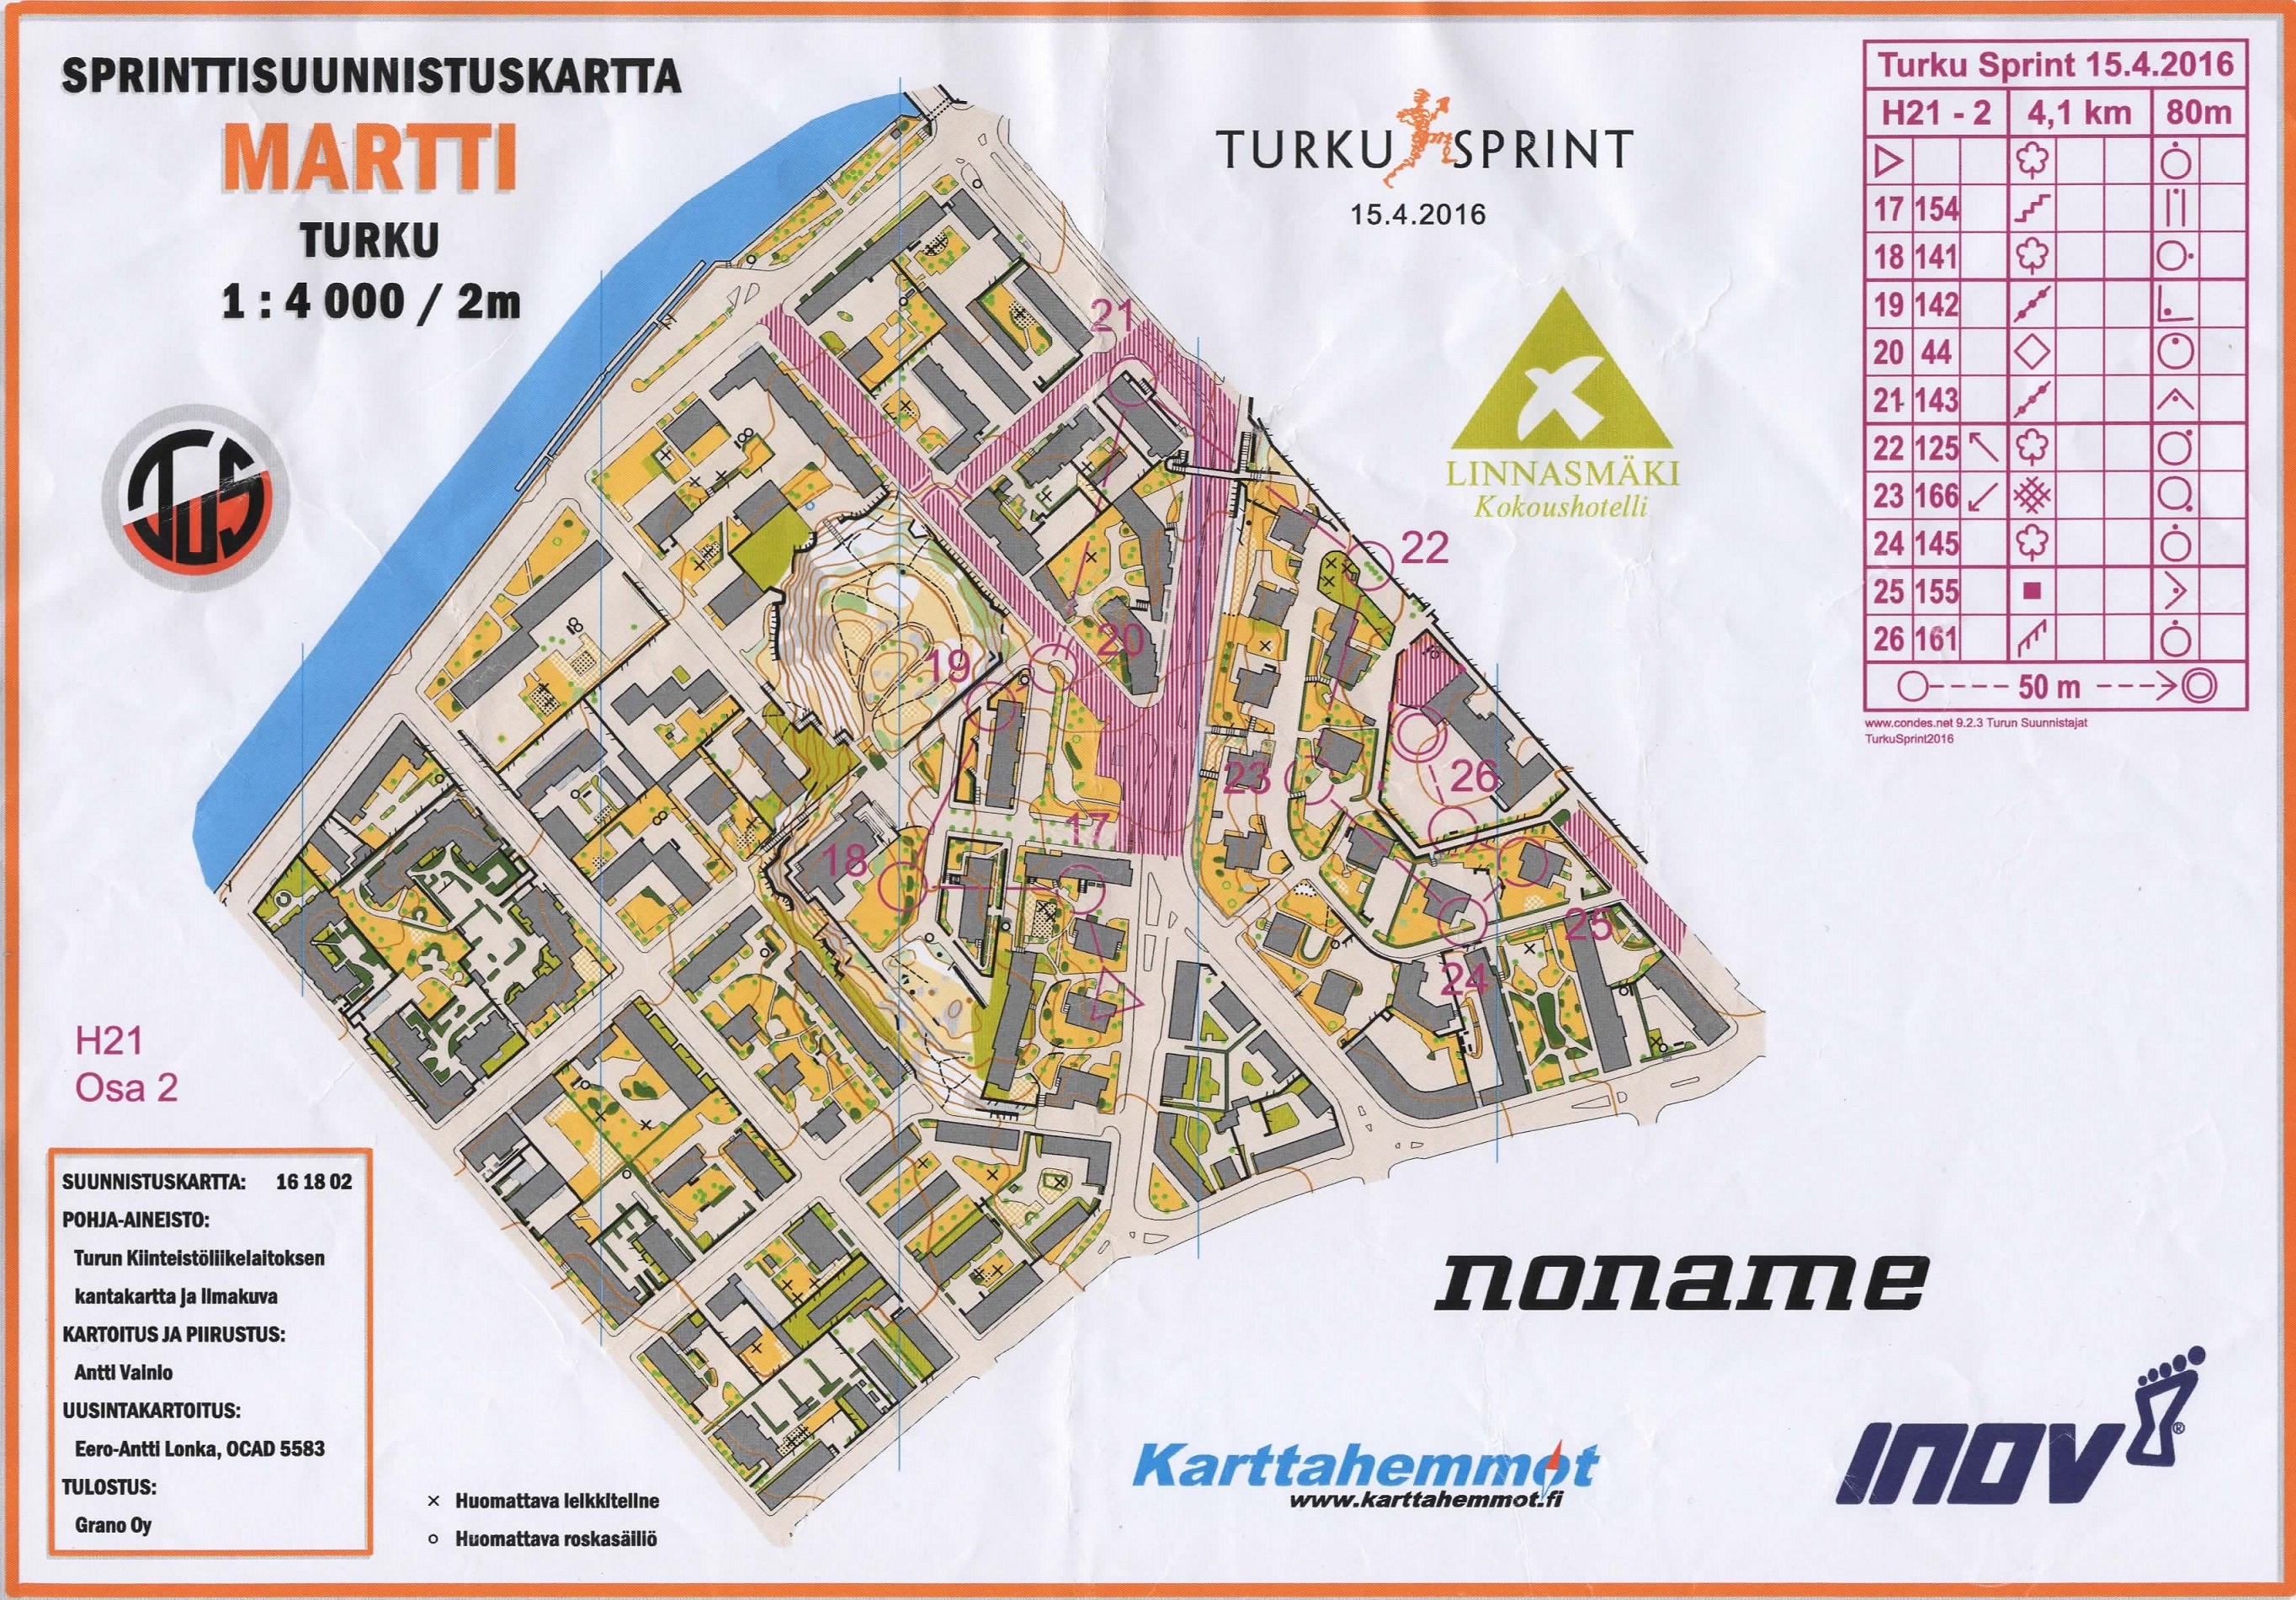 Turku Sprint, part 2 (15/04/2016)